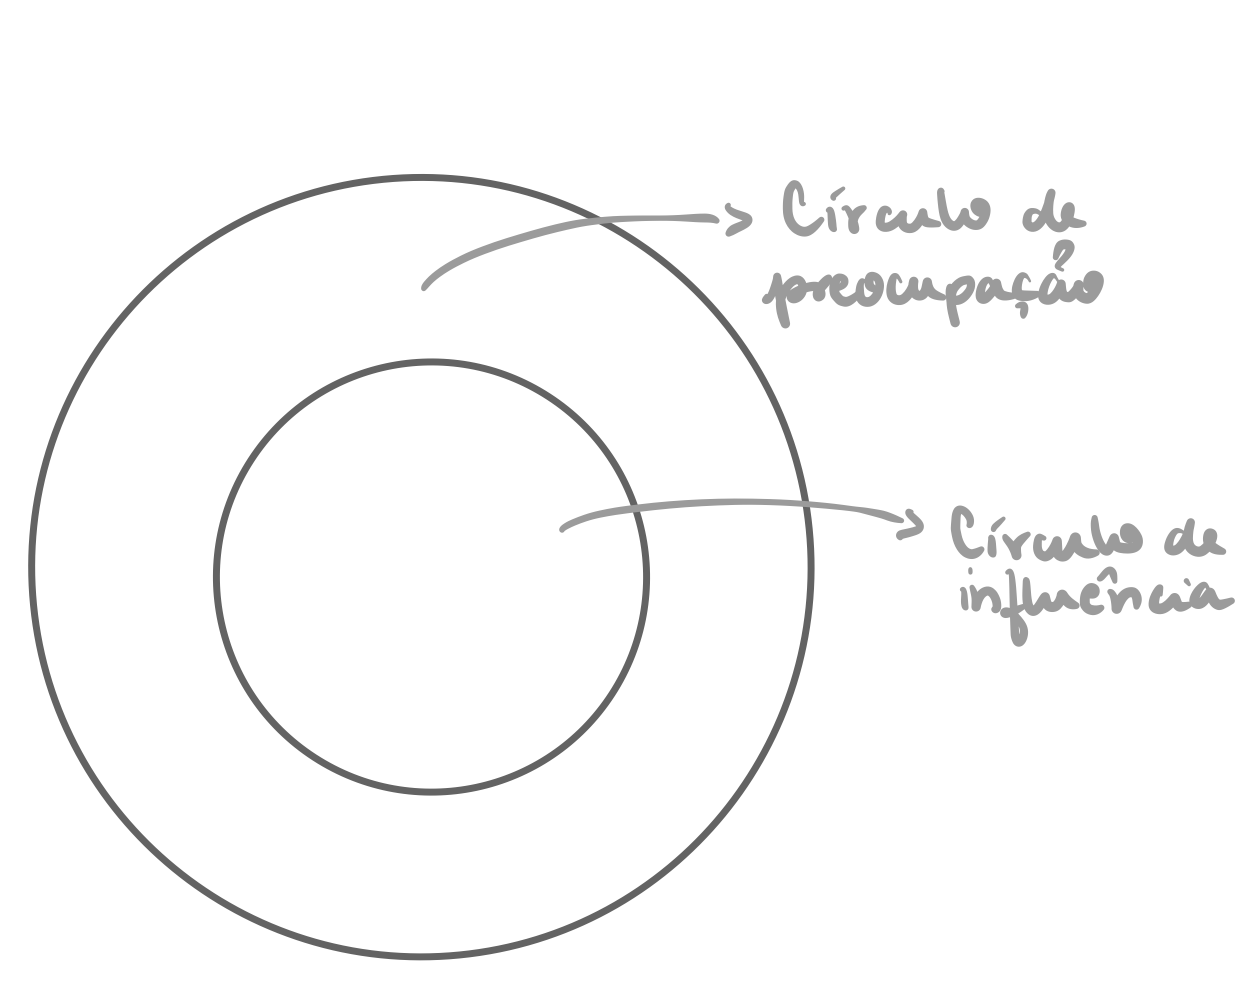 Desenho de dois círculos, um dentro do outro. O mais interno é indicado como círculo de influência e o mais externo é indicado como círculo de preocupação